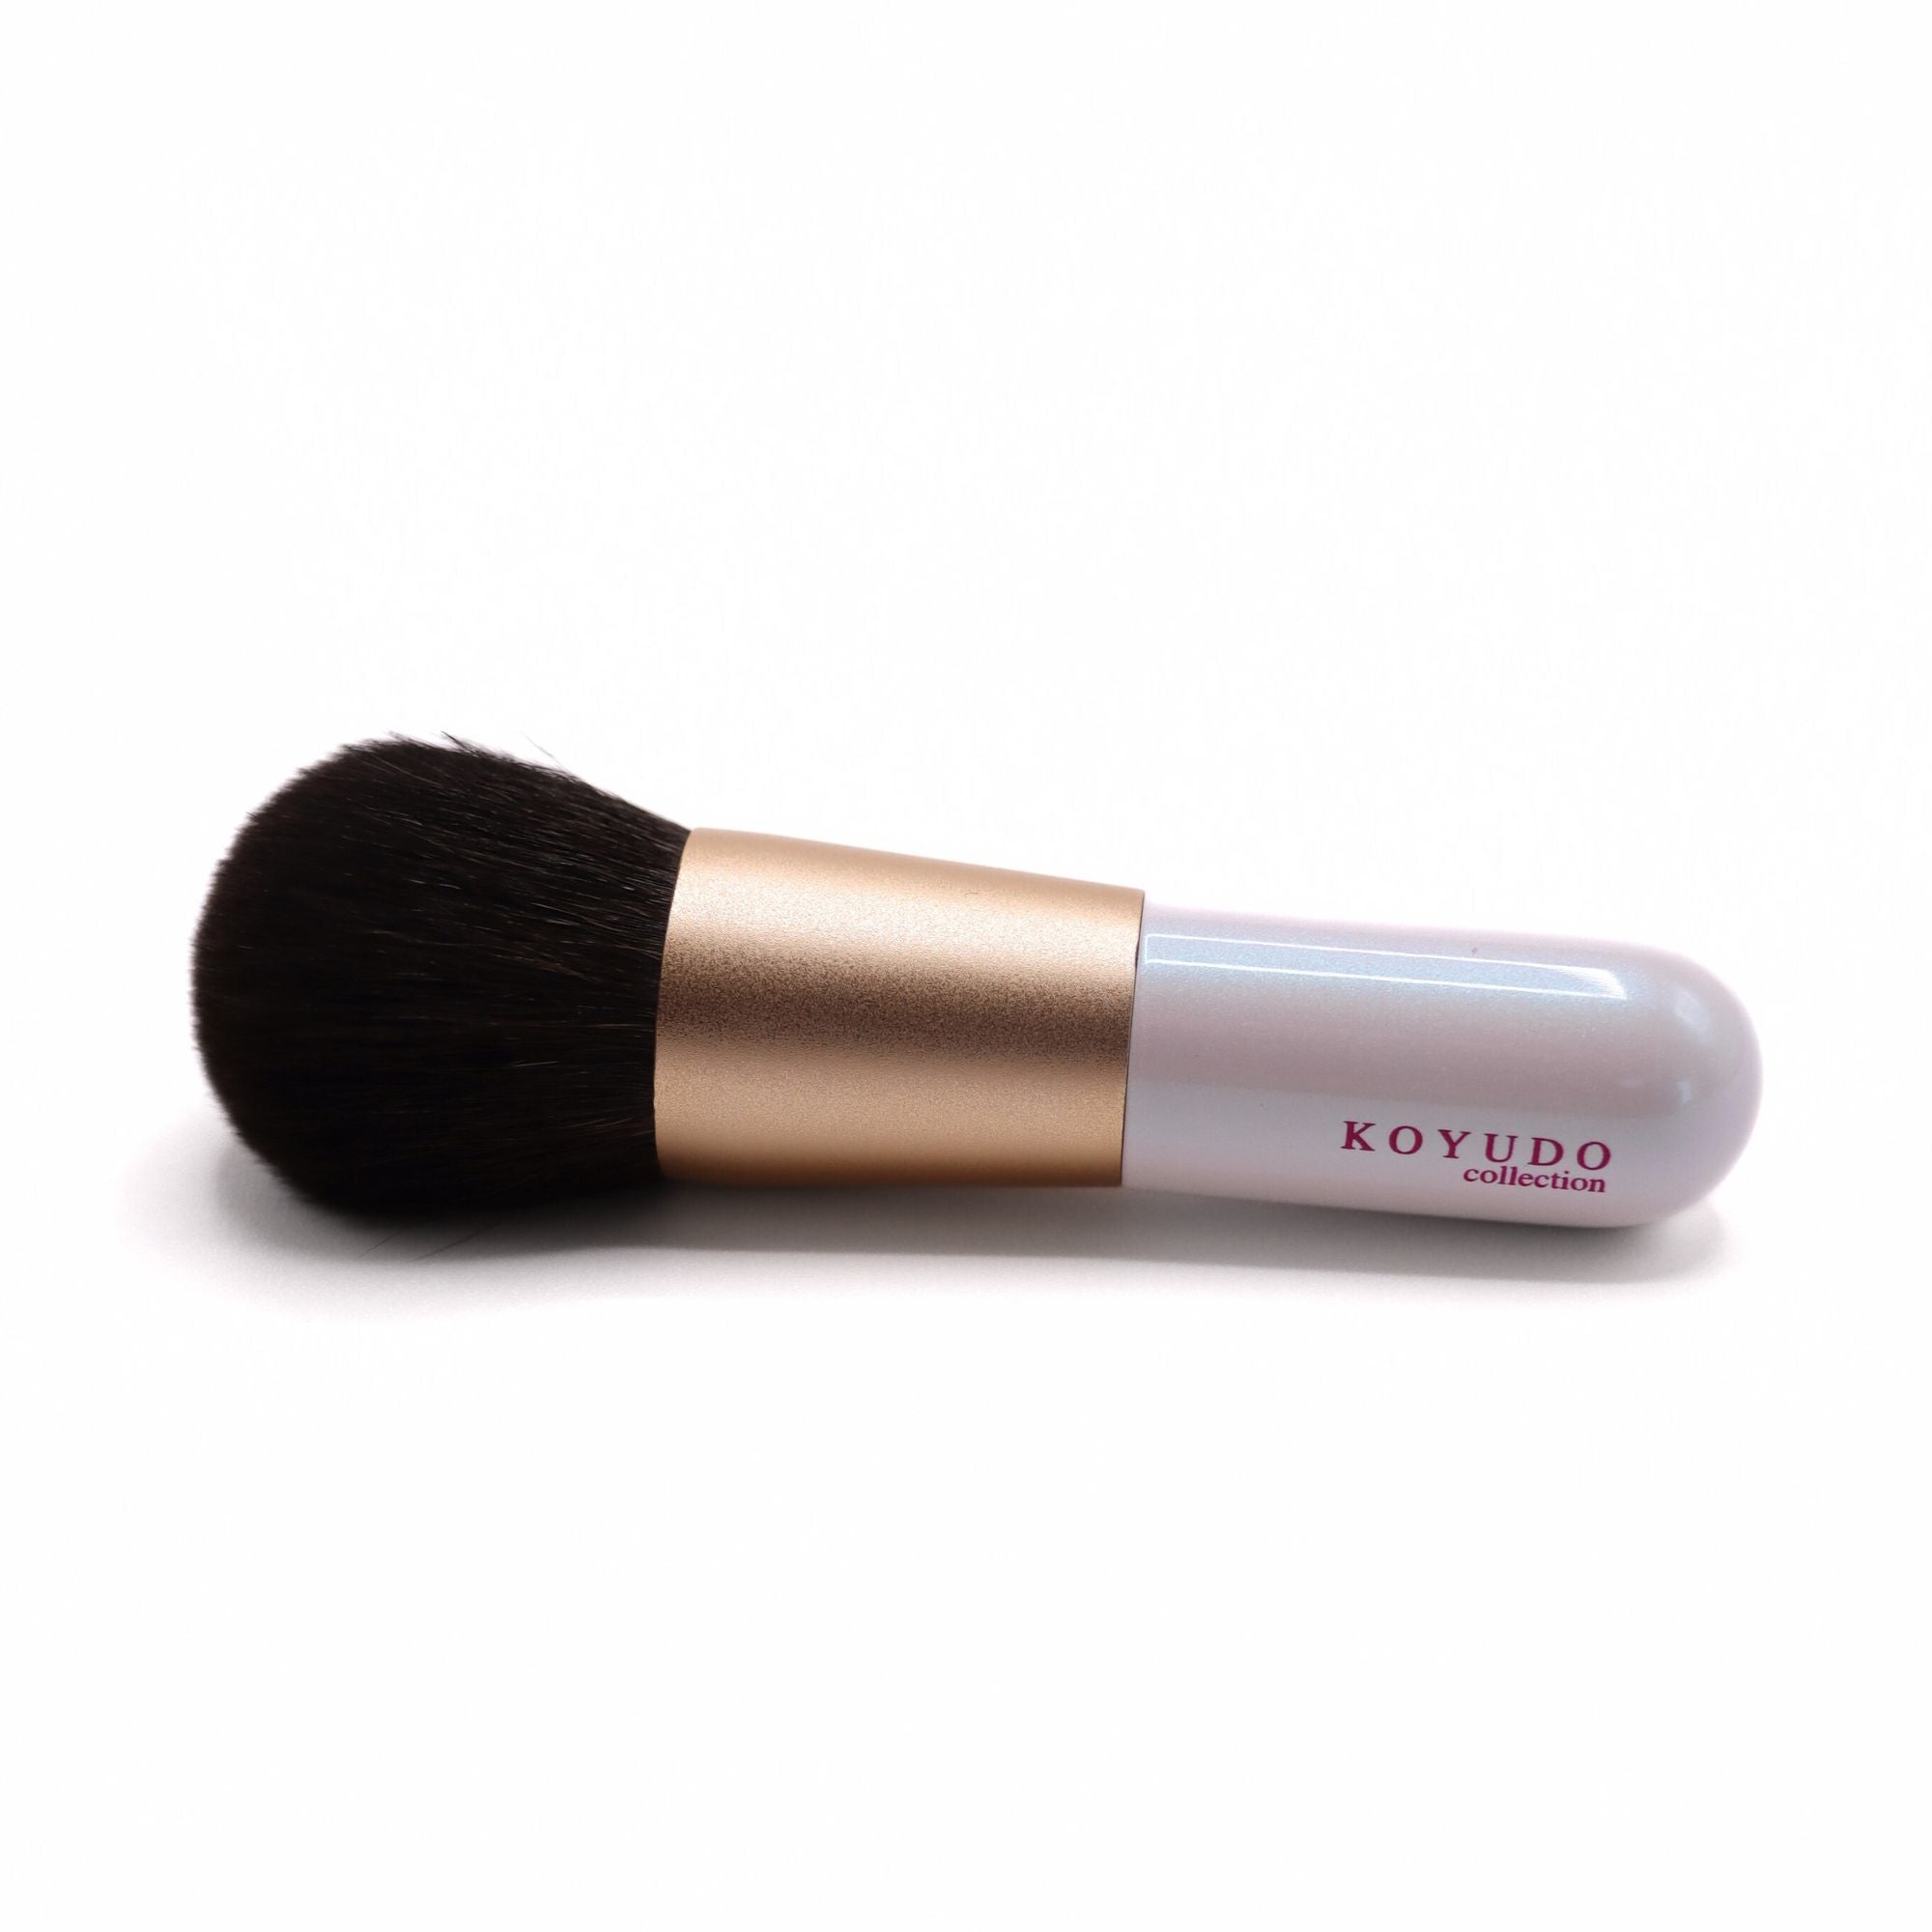 Koyudo Fu-pa14ena Powder Brush (Round) REVIVAL - Fude Beauty, Japanese Makeup Brushes